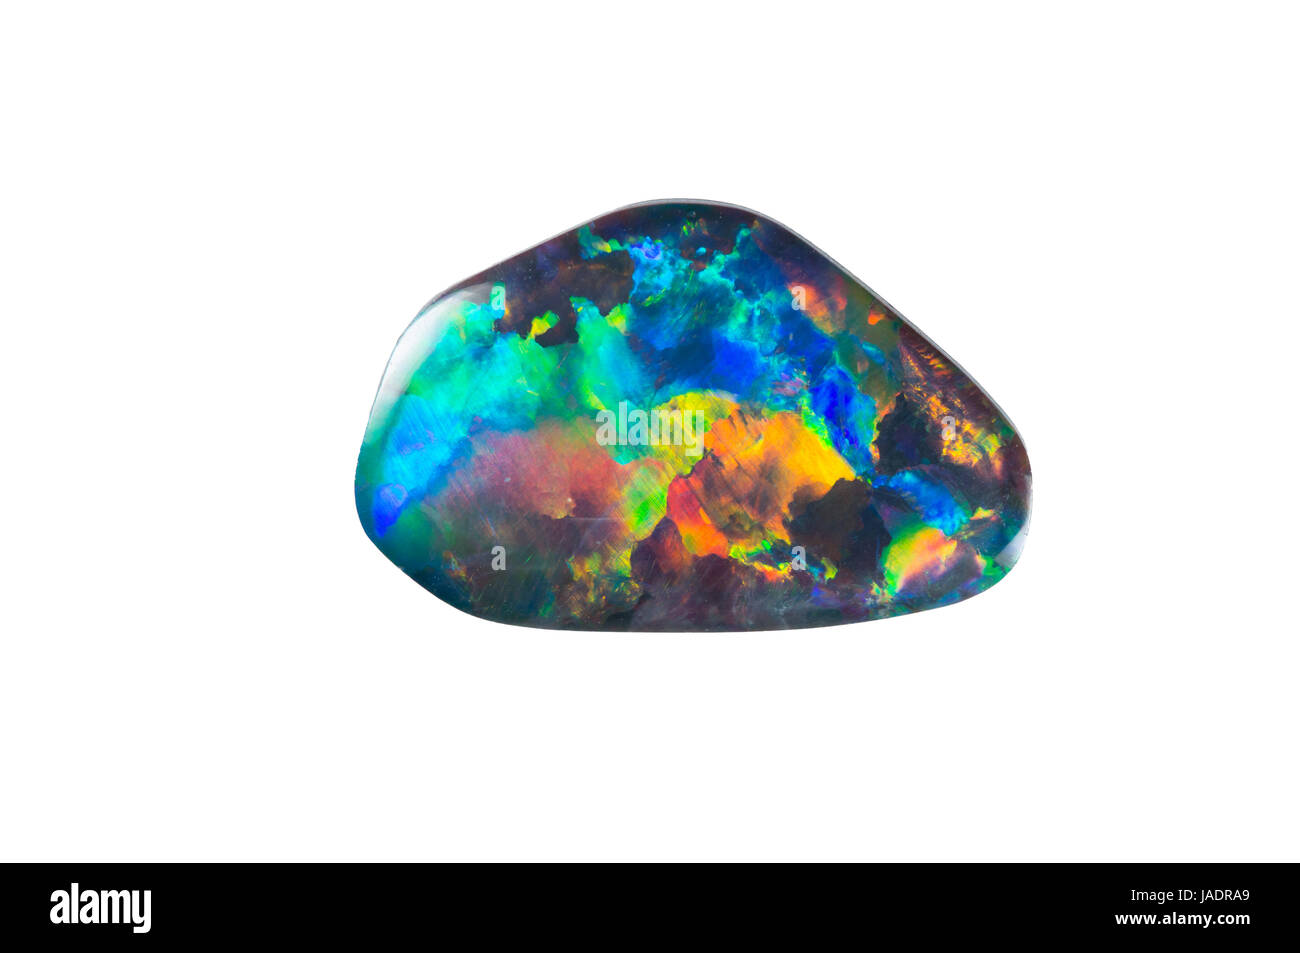 Ein freigestellter Opal mit komplettem Farbspektrum Foto Stock